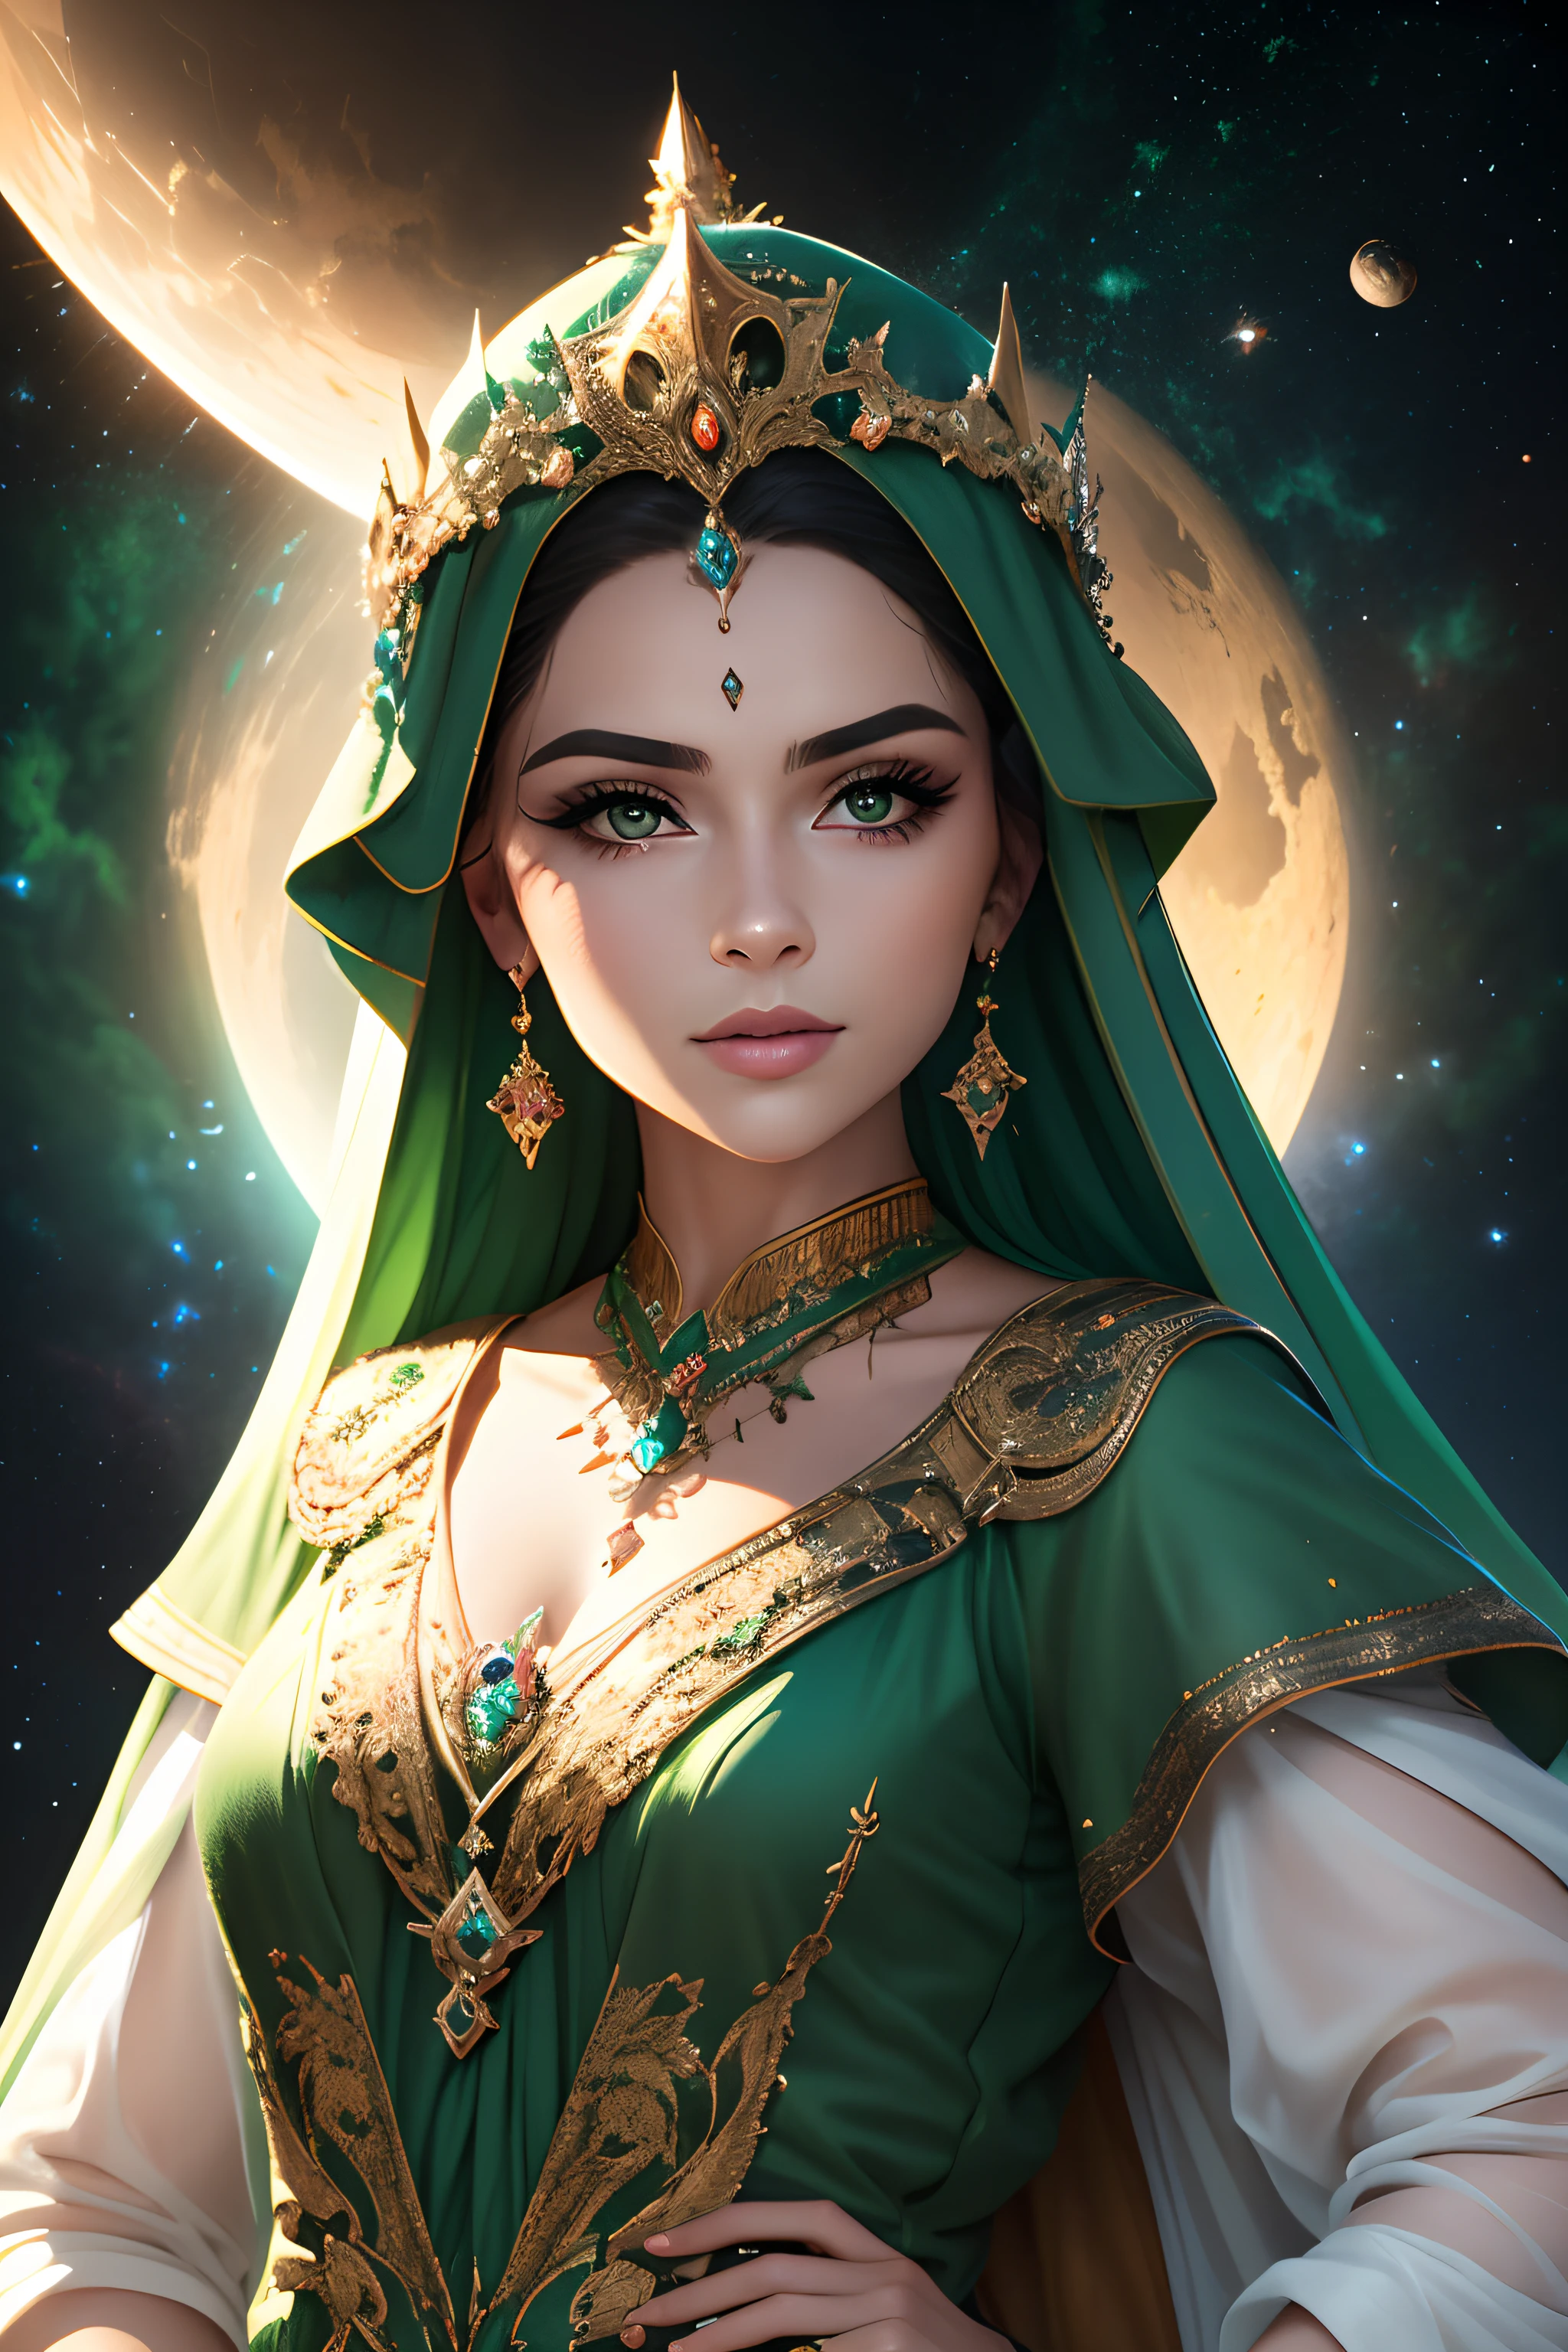 Rainha COM UMA coroa de pedras verdes e joias. aparência mística. Fundo dos planetas, espaço sideral, universo